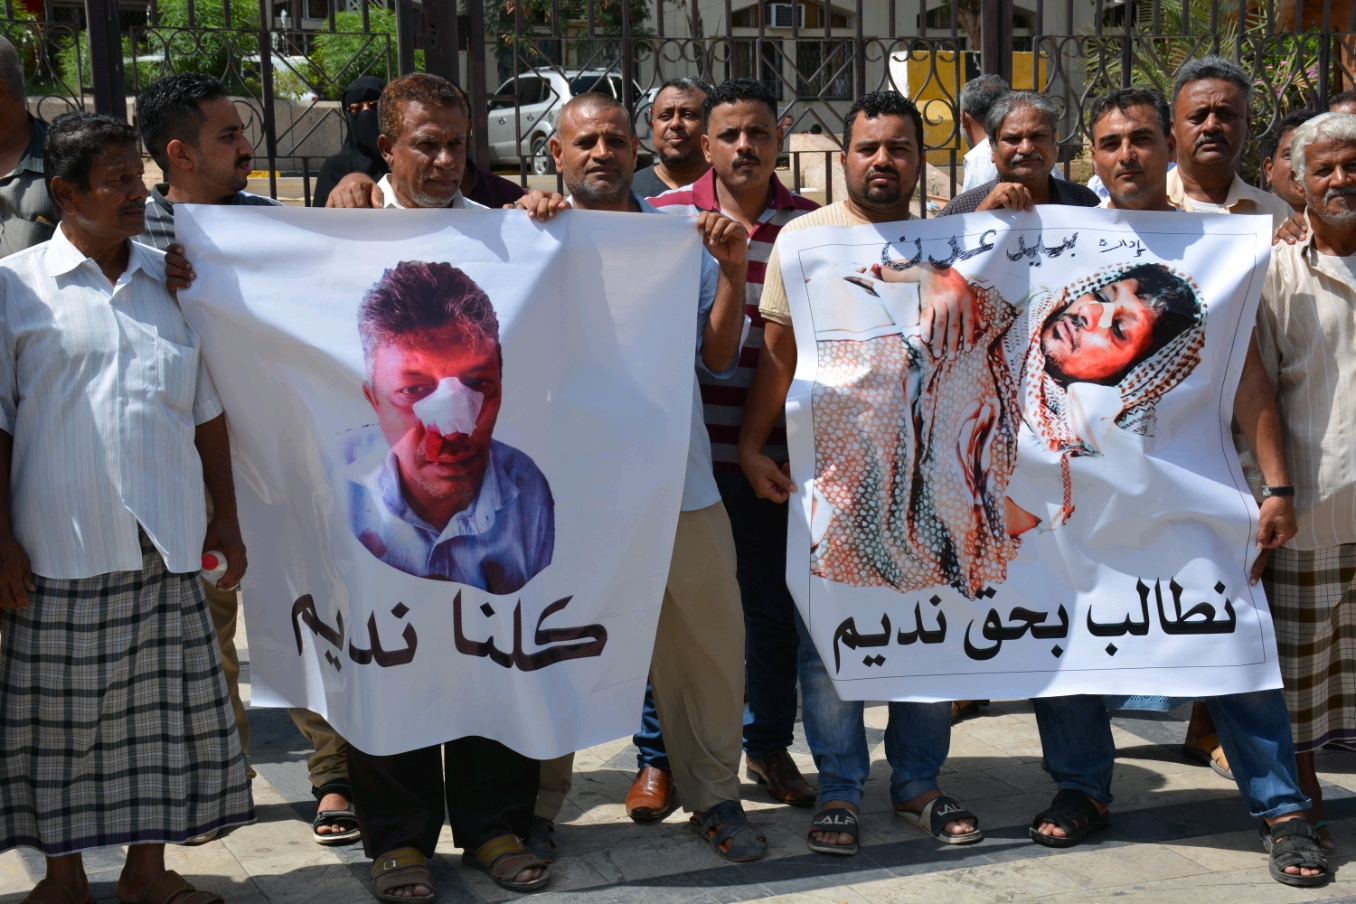 موظفو بريد عدن ينظمون وقفة احتجاجية للمطالبة بمعاقبة المعتدي على مدير بريد خورمكسر